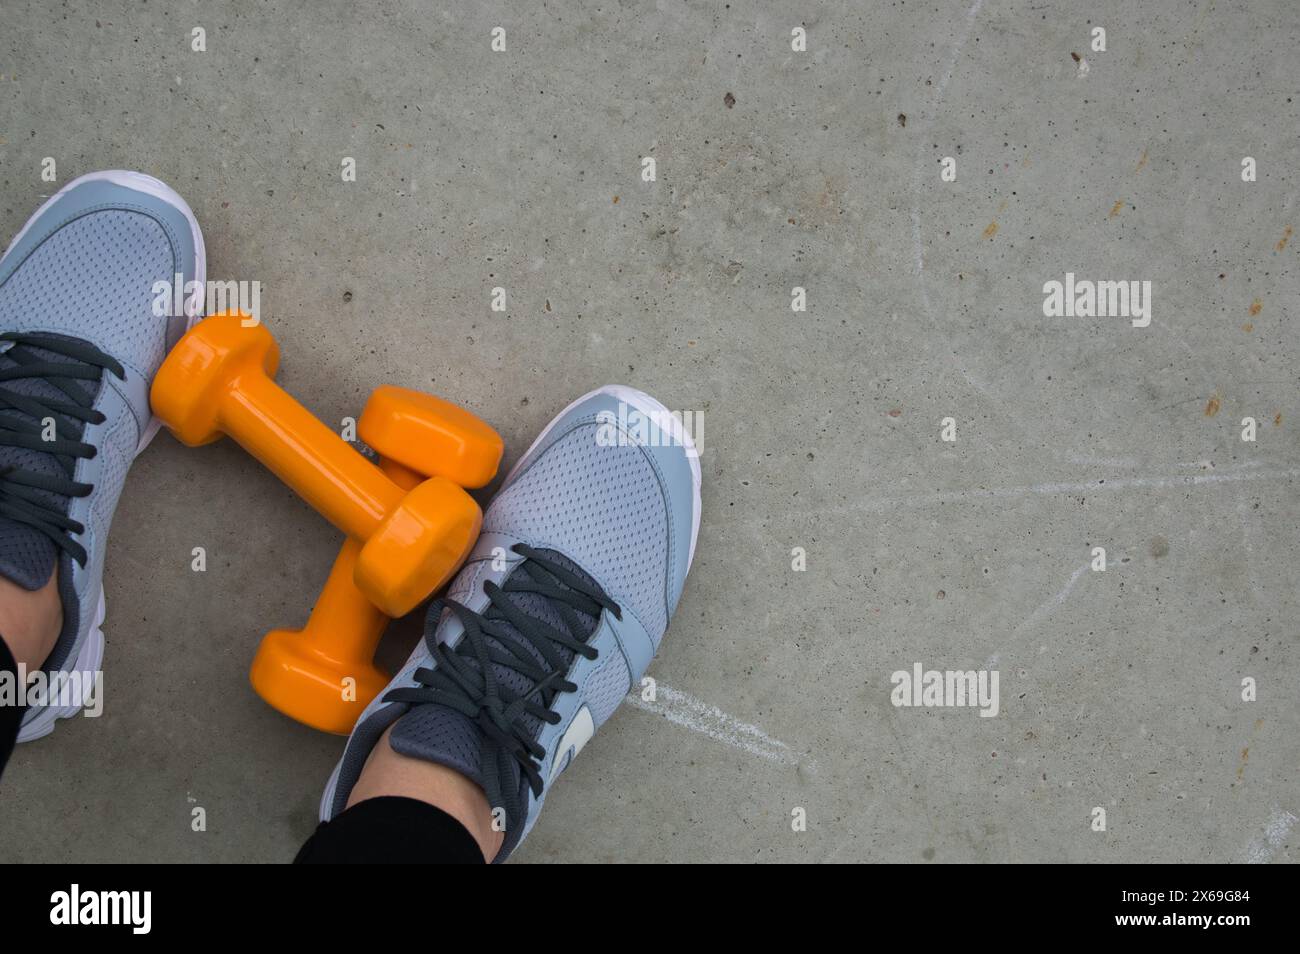 Concetto di fitness. Gambe femminili in scarpe sportive a terra con manubri. Spazio per il testo. Foto Stock